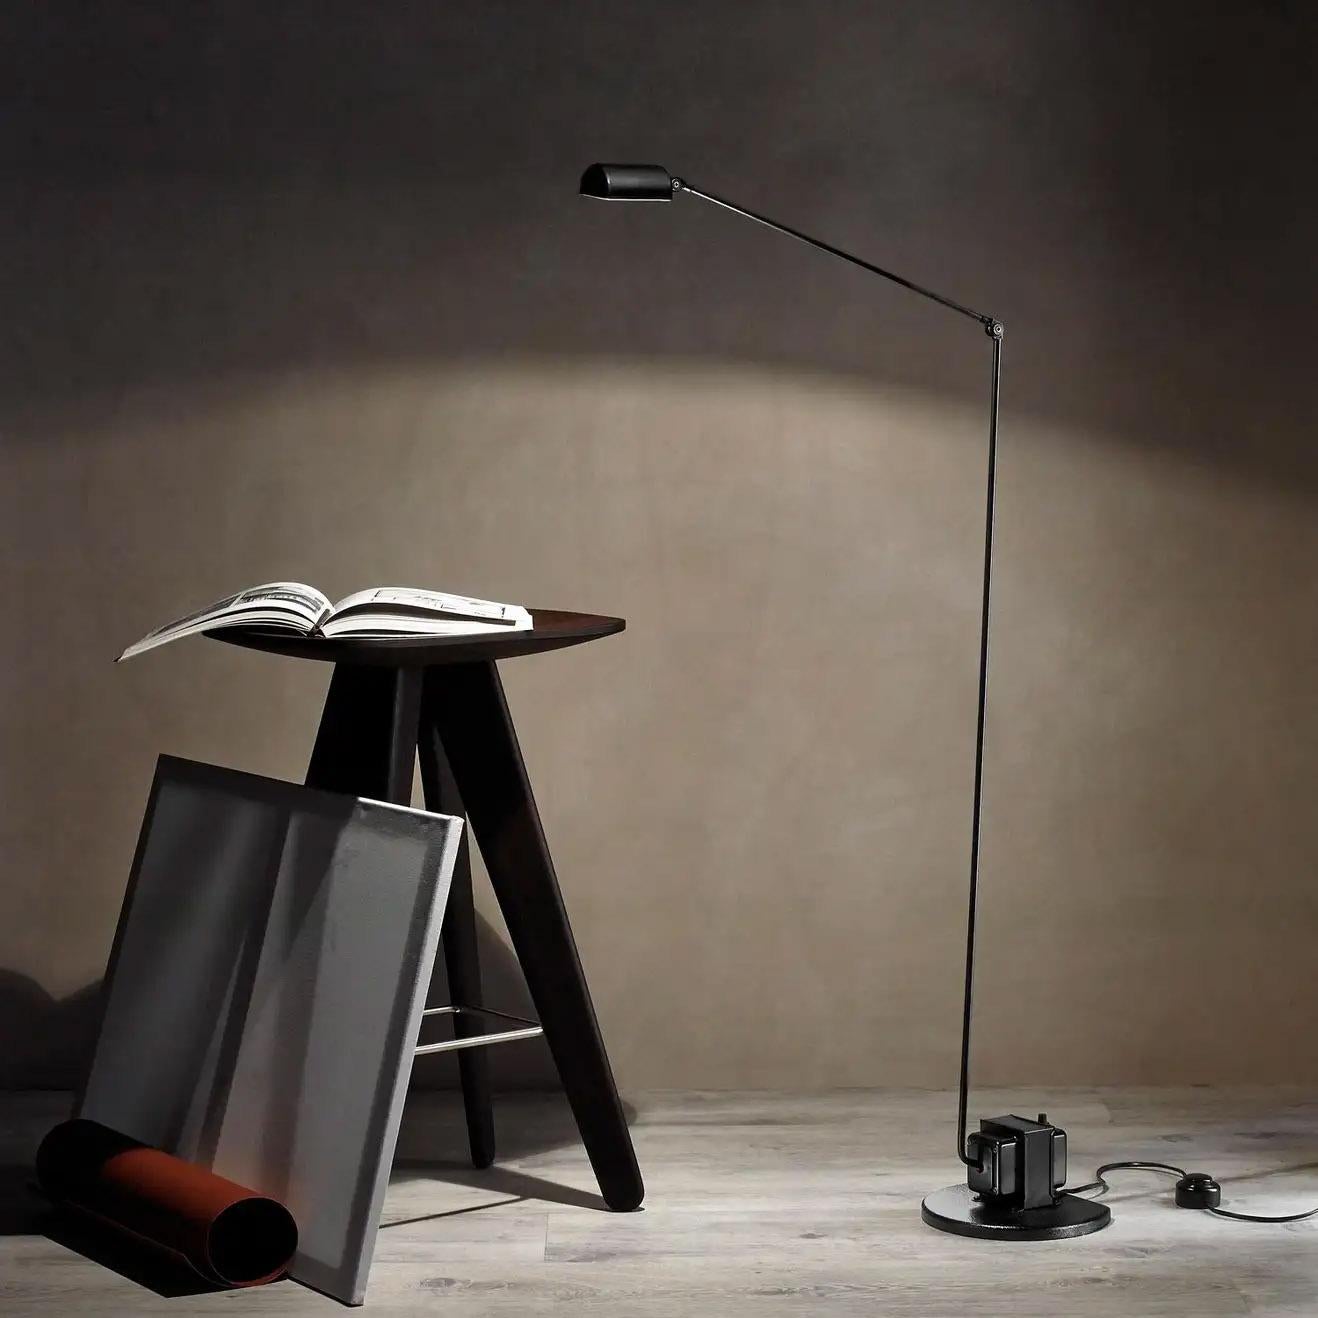 Lumina Lampe de table LED Daphine Terra en bronze métallique par Tommaso Cimini

Emblème incontesté de l'élégance et de la fonctionnalité, le Daphine représente l'essence même de Lumina.
L'idée à l'origine de la création de la lampe IDEA est aussi